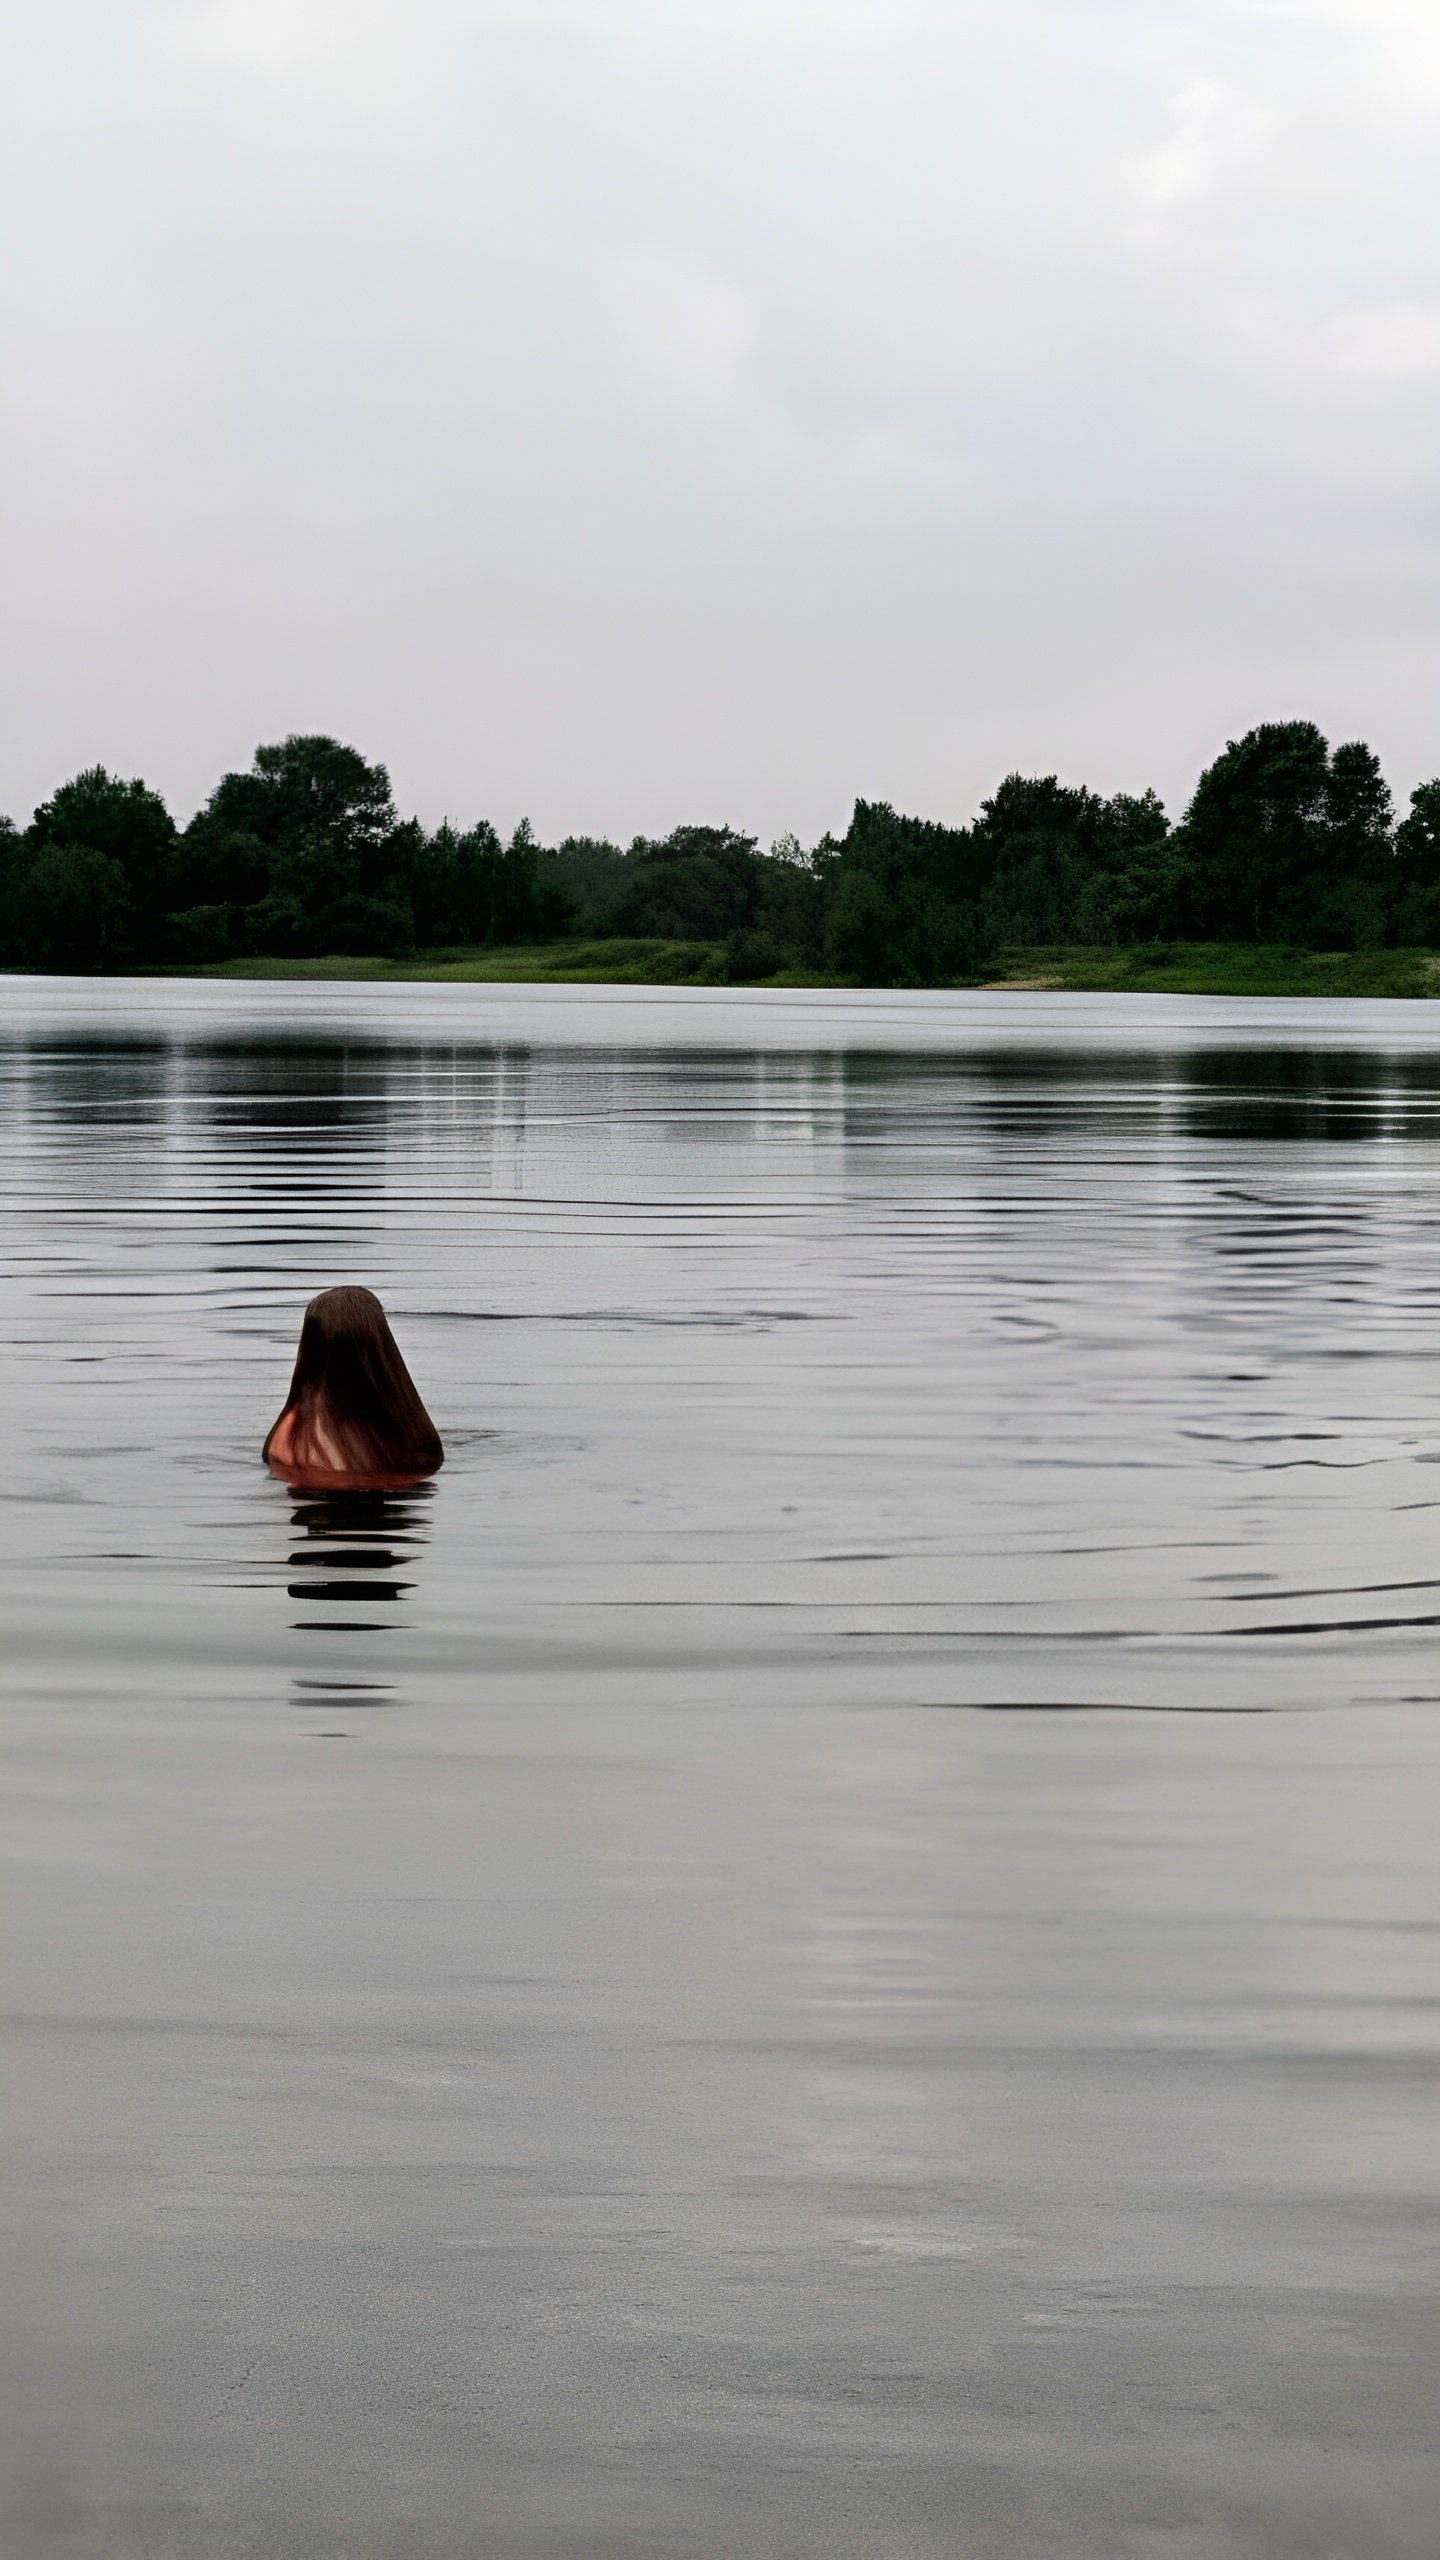 МЧС призывает к безопасности на воде: 8 детей утонули за лето, необходимо провести беседу с детьми о правилах купания